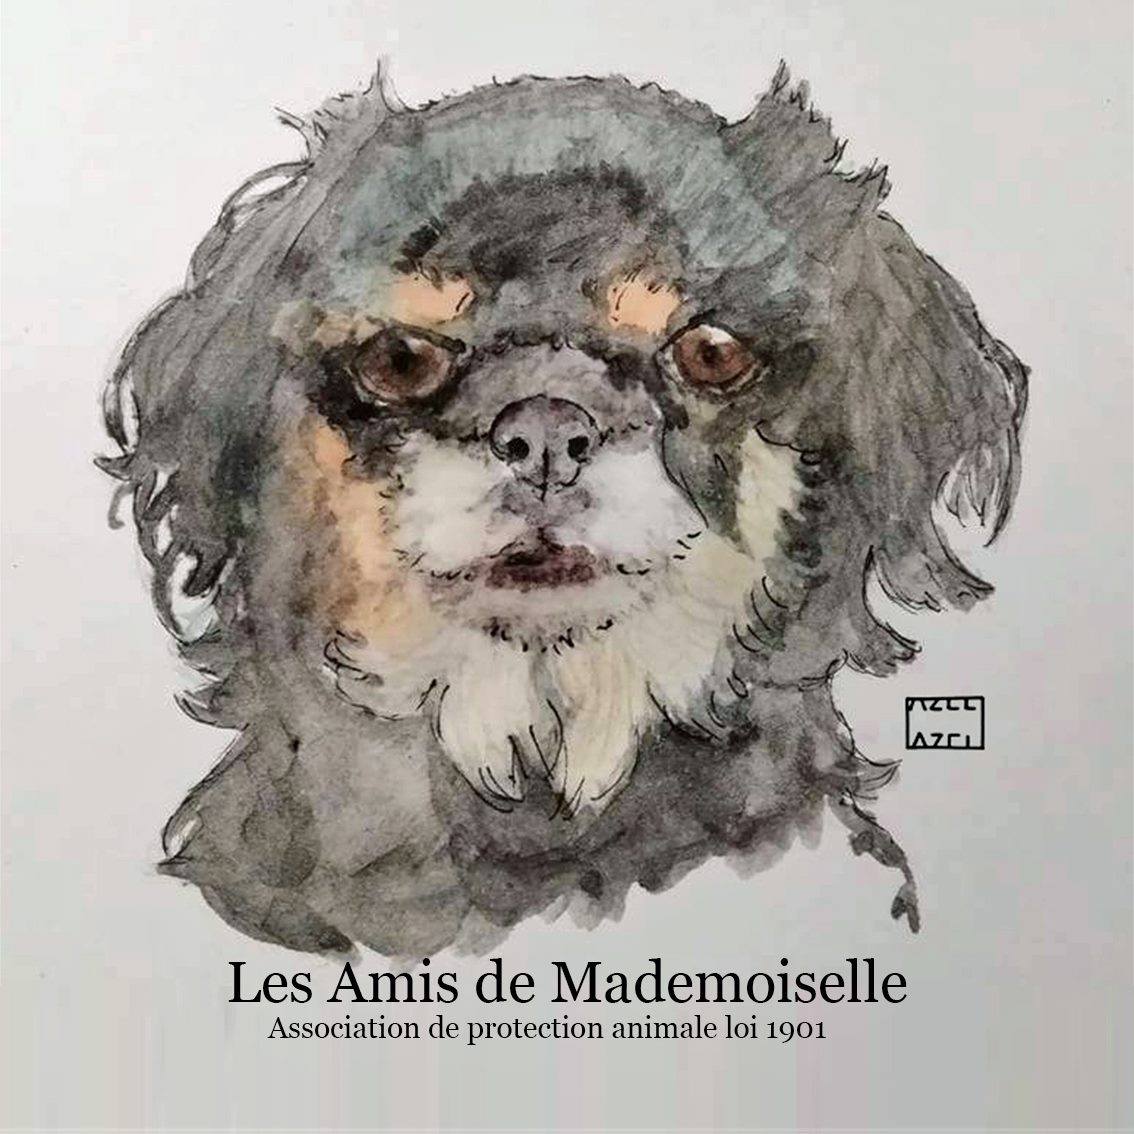 Les Amis de Mademoiselle (LADM)